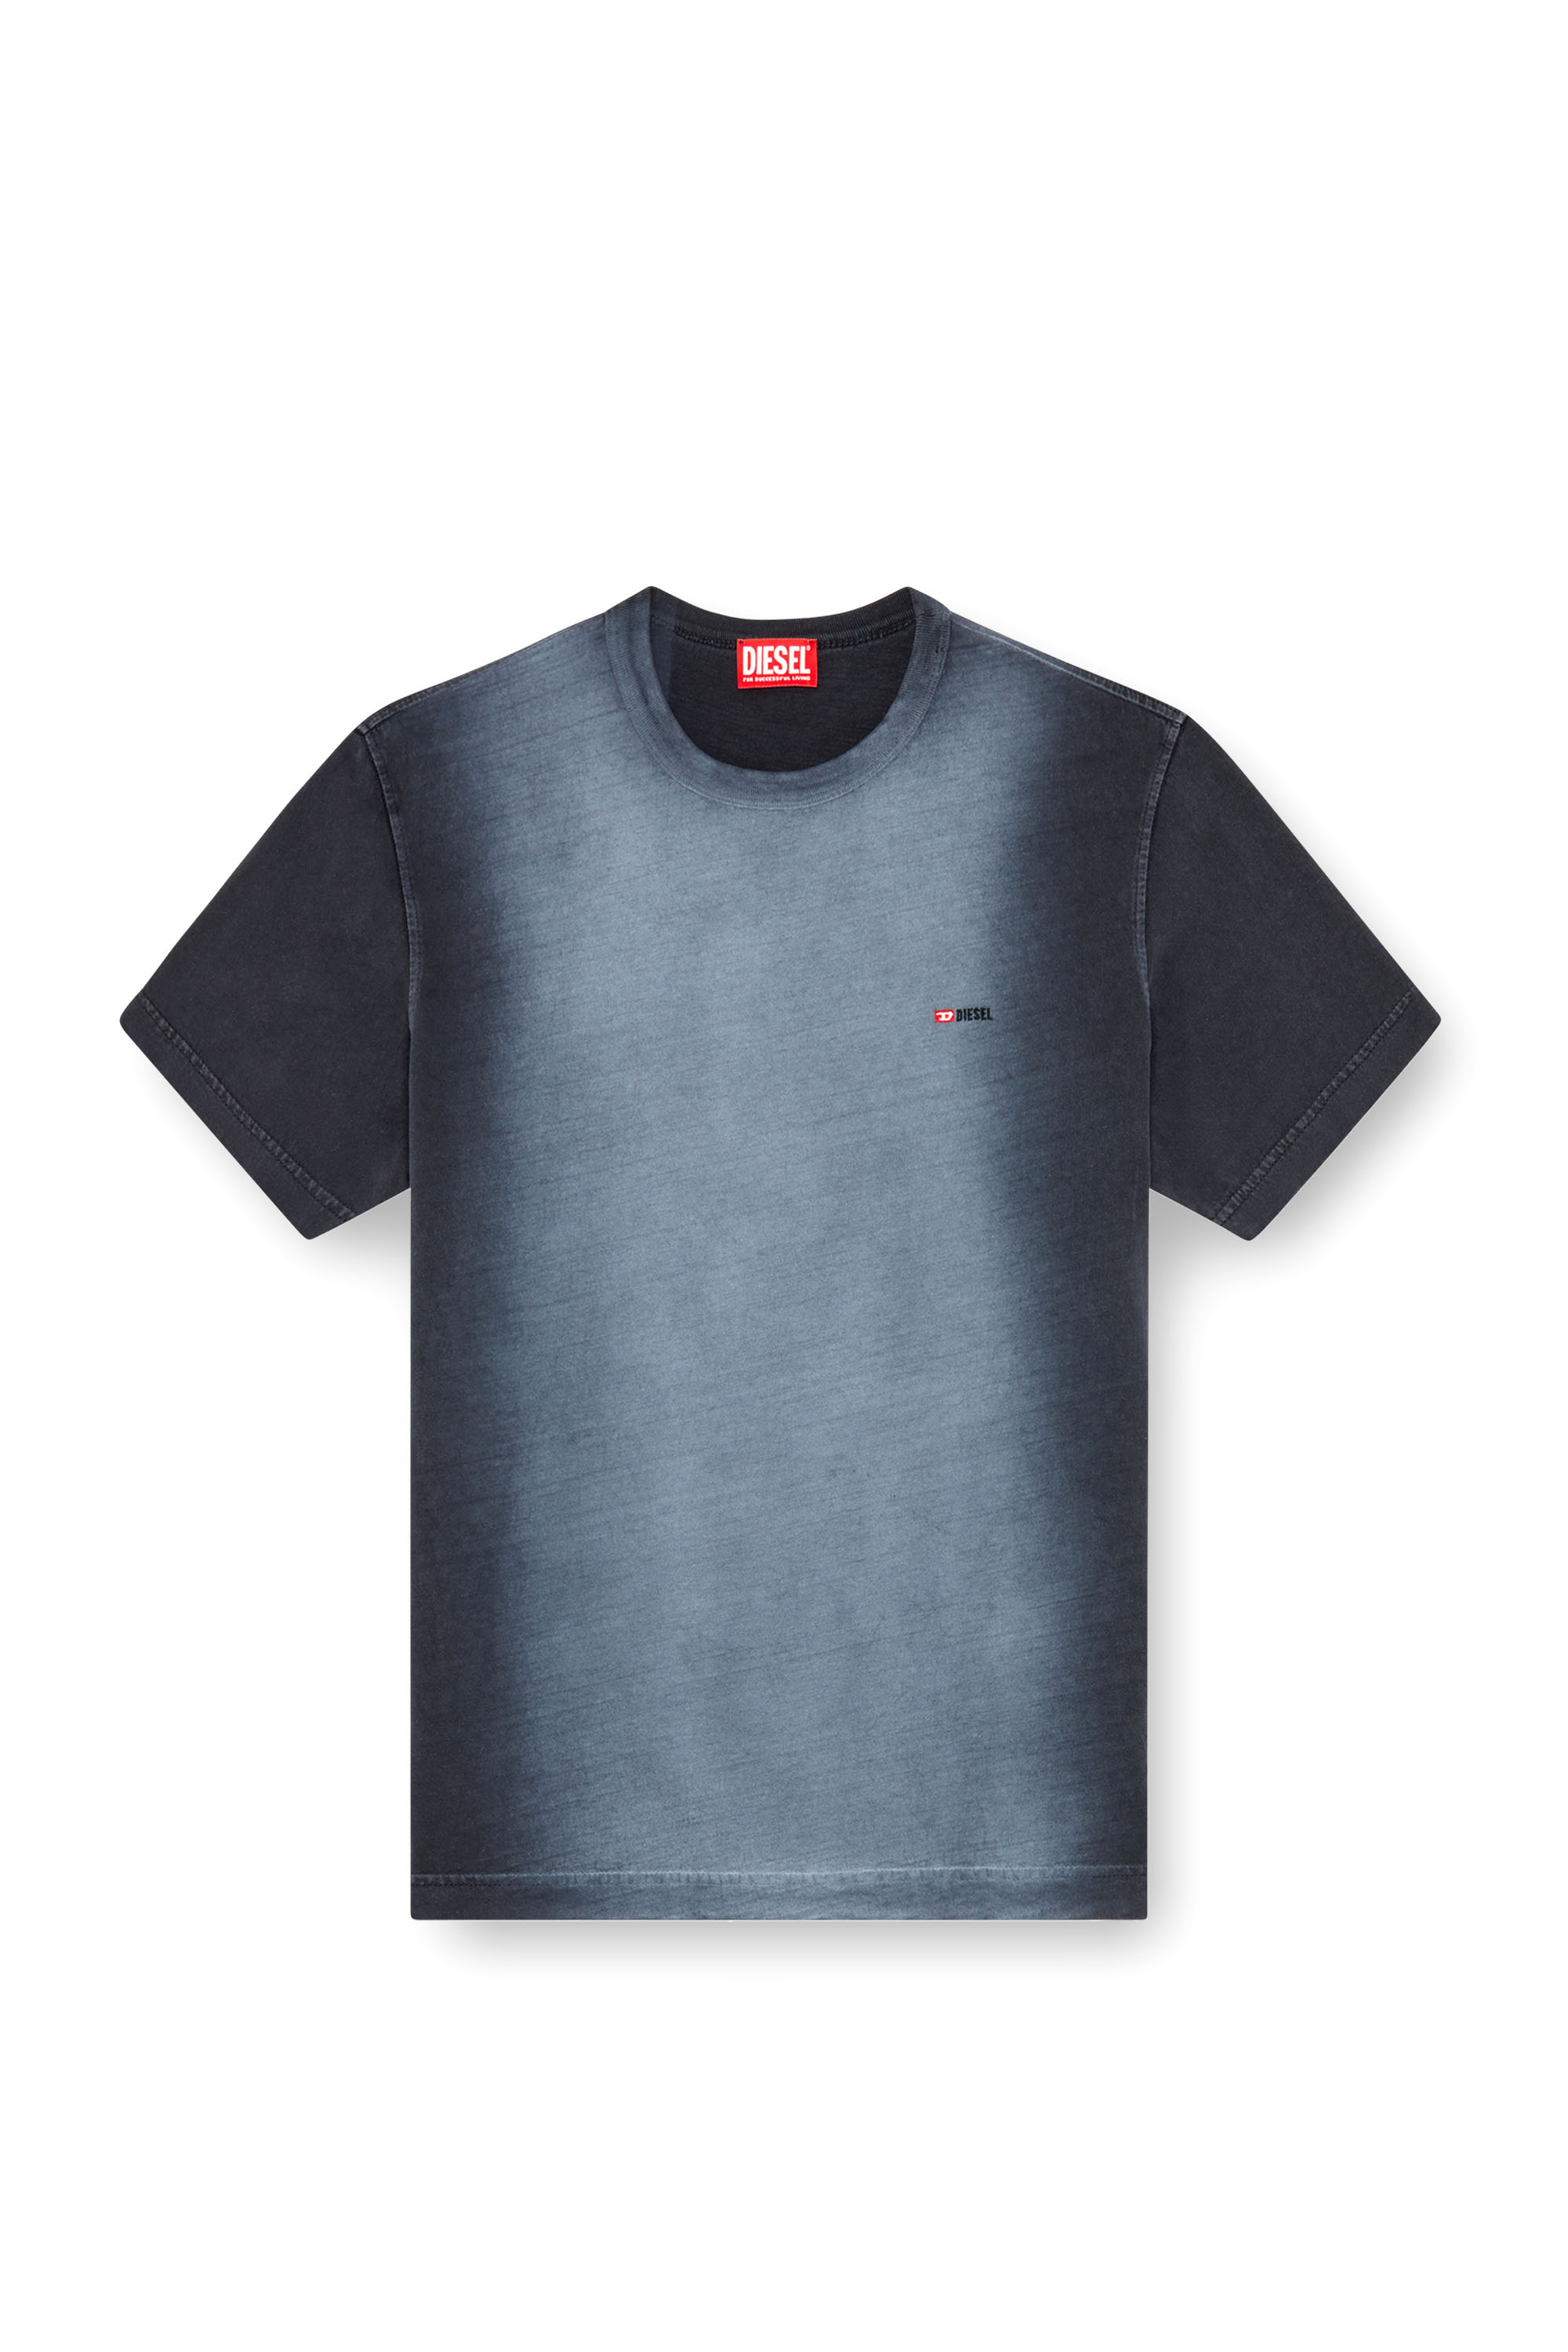 Diesel - T-ADJUST-Q2, Male T-shirt in sprayed cotton jersey in ブラック - Image 3